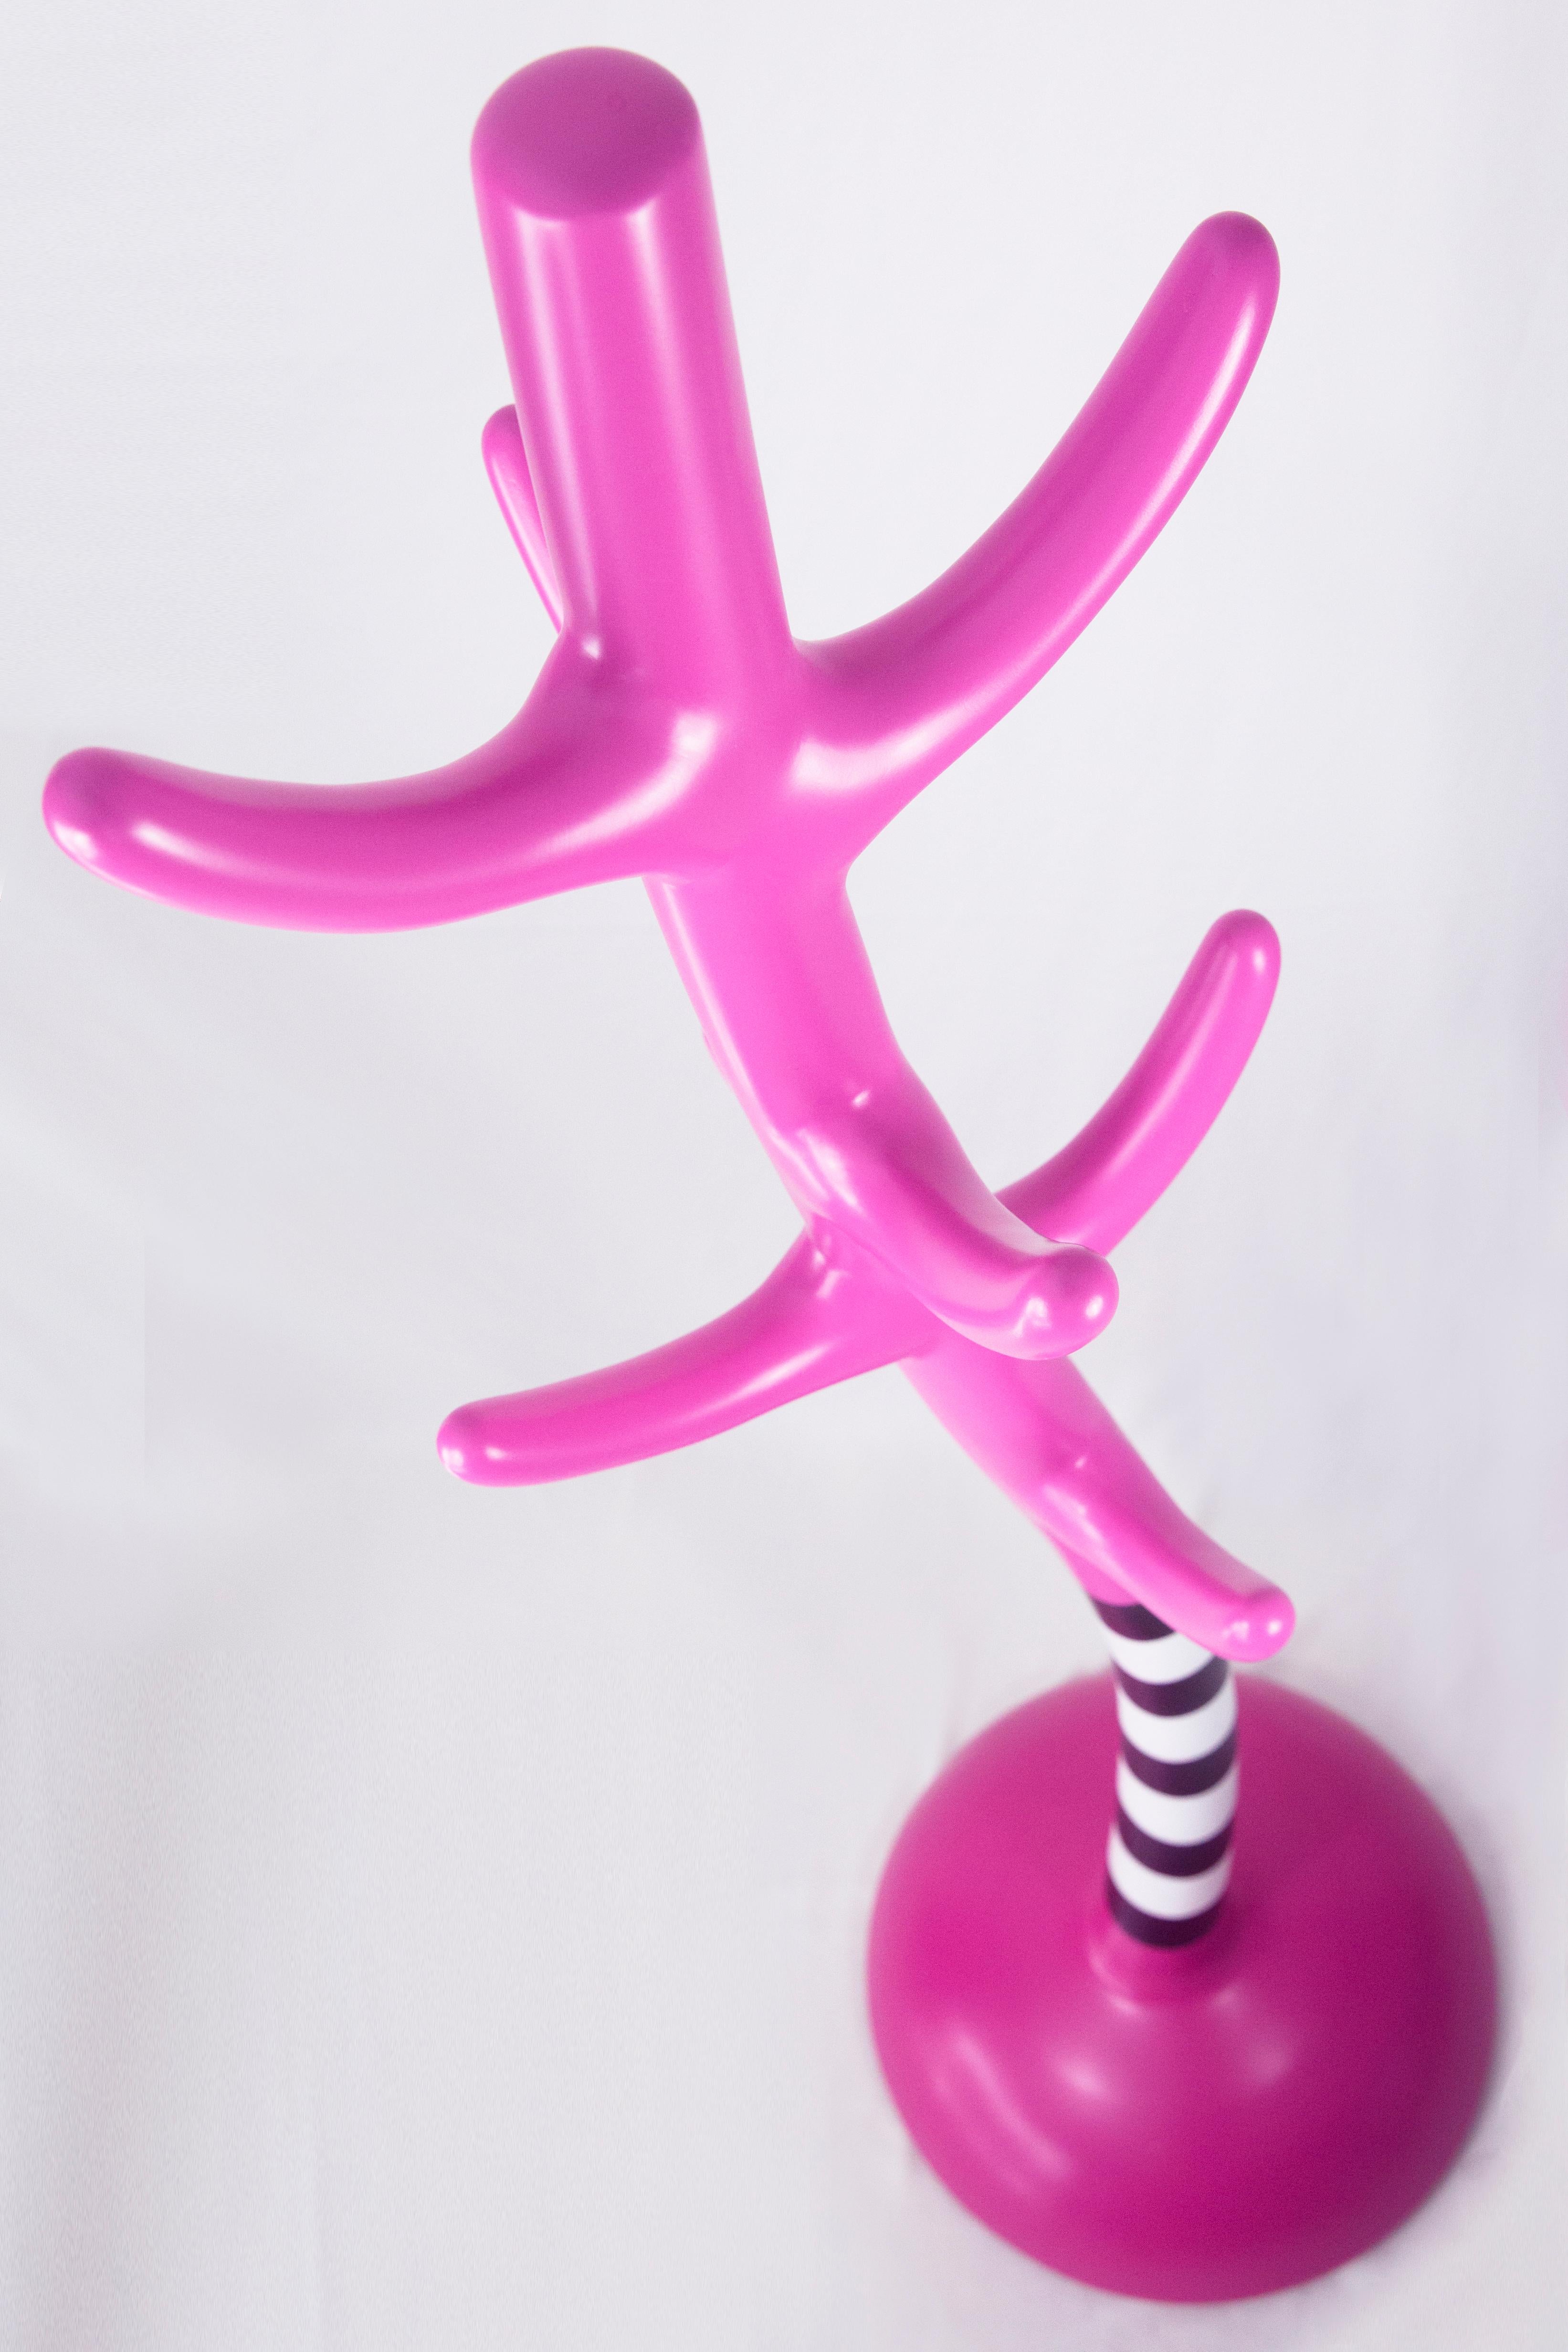 Turkish Crooked Coat Rack: Vibrant Pink Sculptural Artistic Hanger For Sale